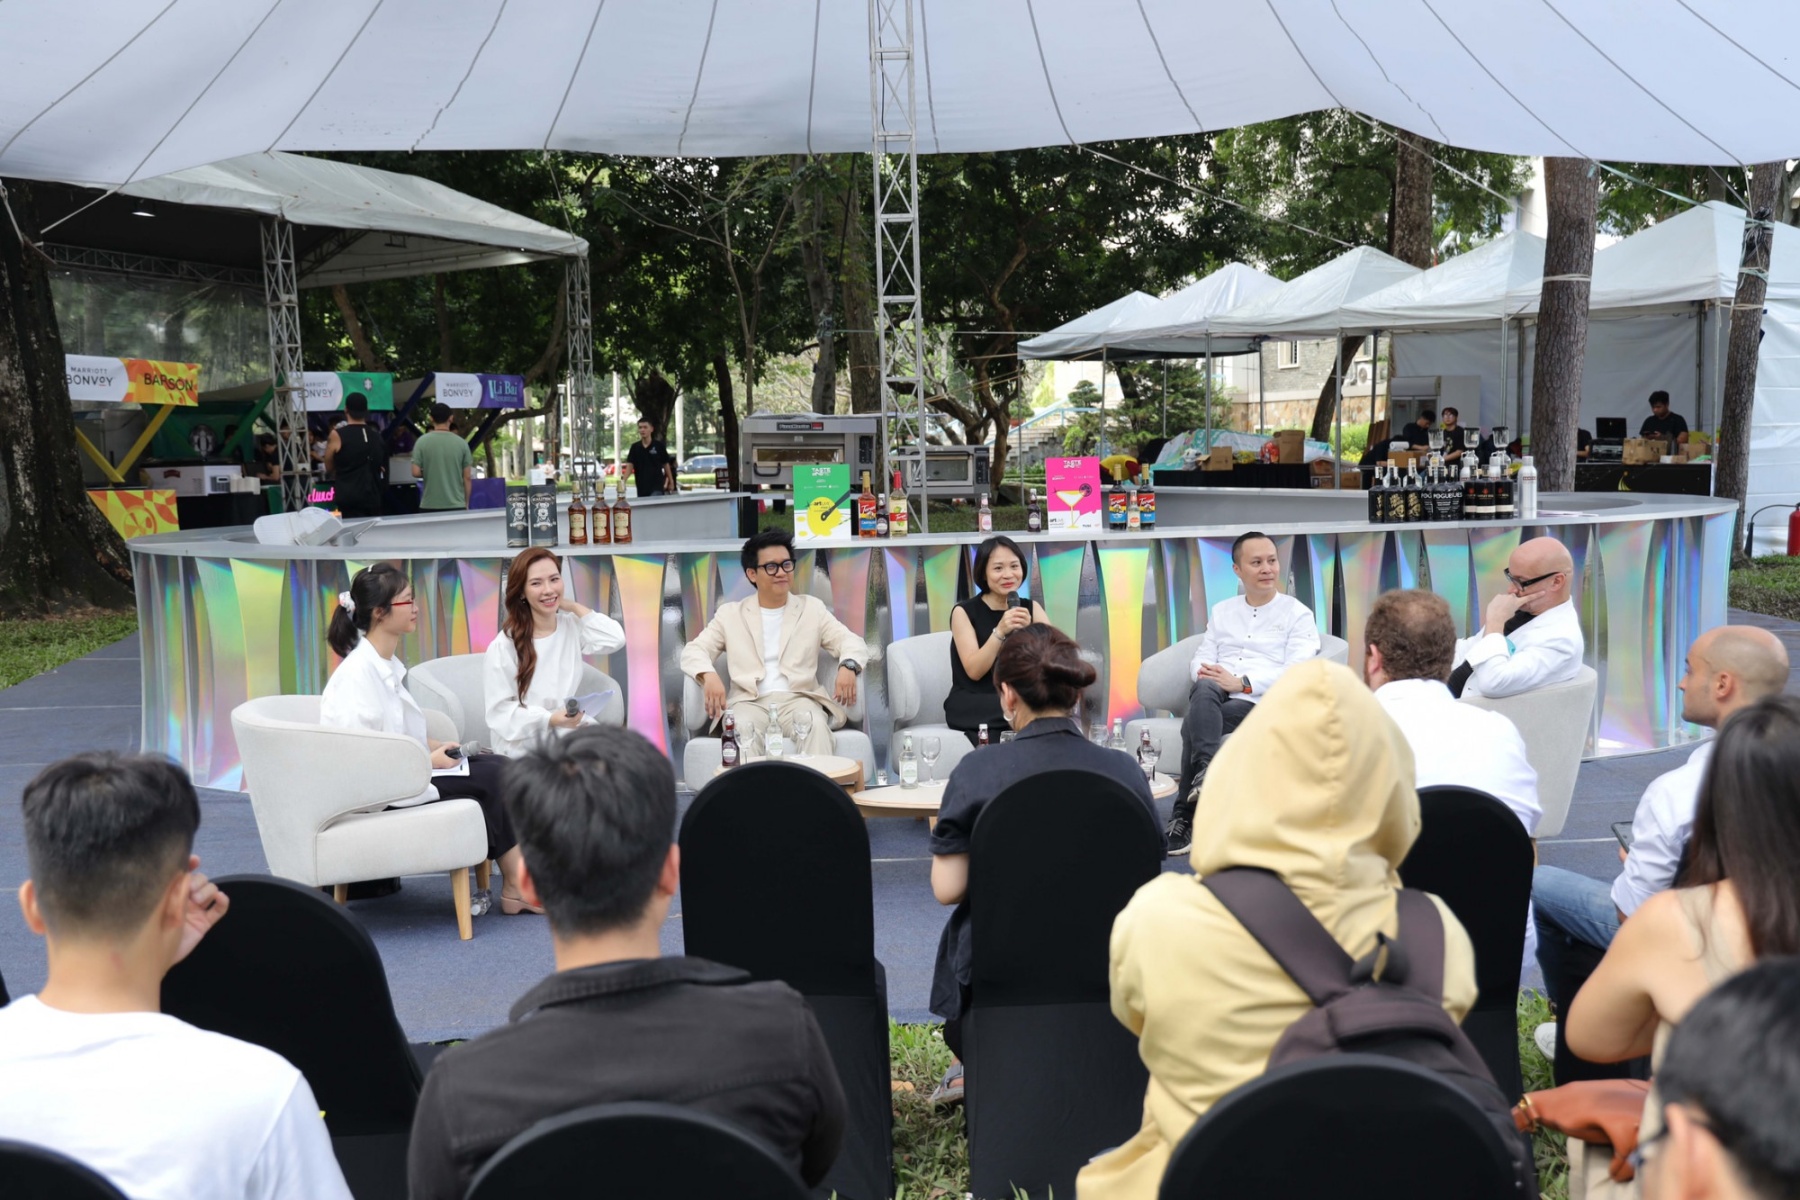 Bên cạnh các trải nghiệm về không gian, thưởng thức ẩm thực, người tham dự còn có cơ hội được lắng nghe chia sẻ từ những khách mời nổi tiếng như Chef Hoàng Tùng, Sommelier Huy Nguyễn... trong các buổi workshop được tổ chức theo các khung giờ cố định